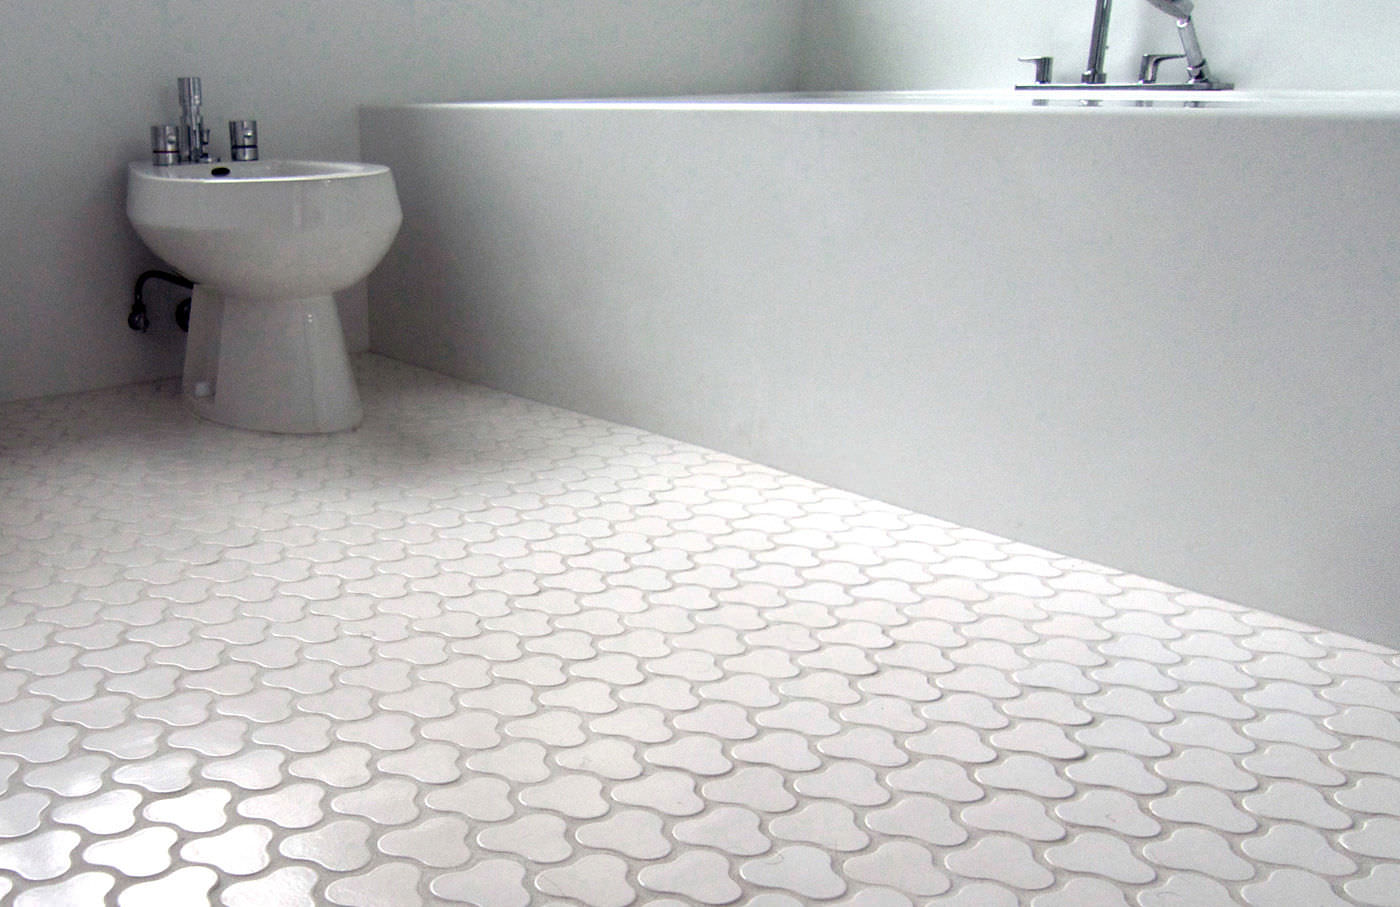 Bathroom floor tiles Bathroom floor tiles Pebbles NKQUOGI